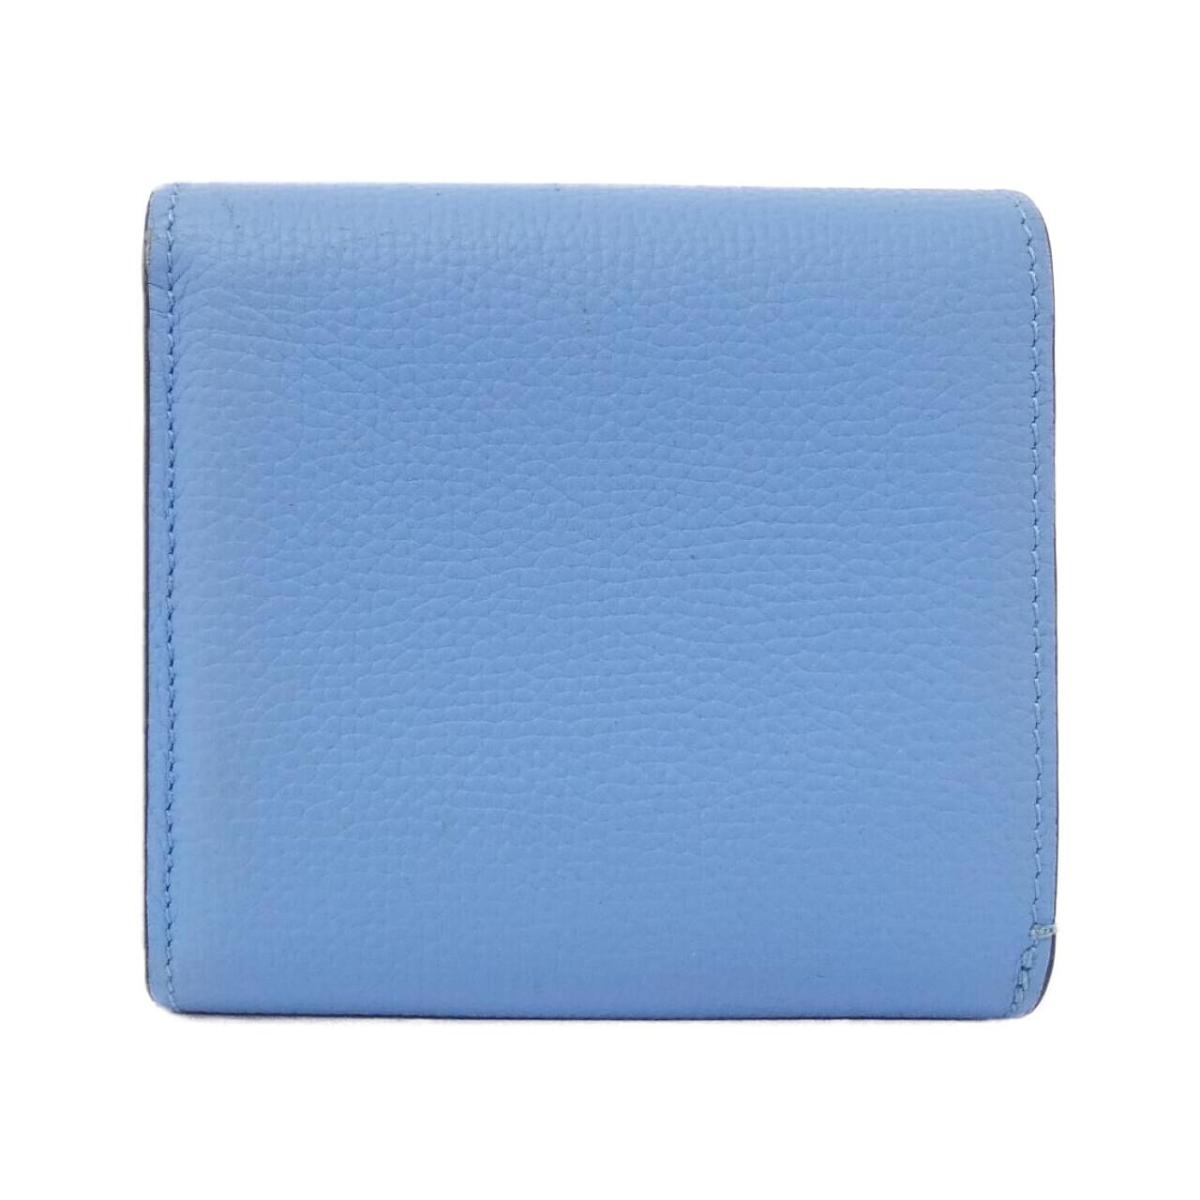 Loewe Anagram Compact Flap Wallet C821L57X01 Wallet Original